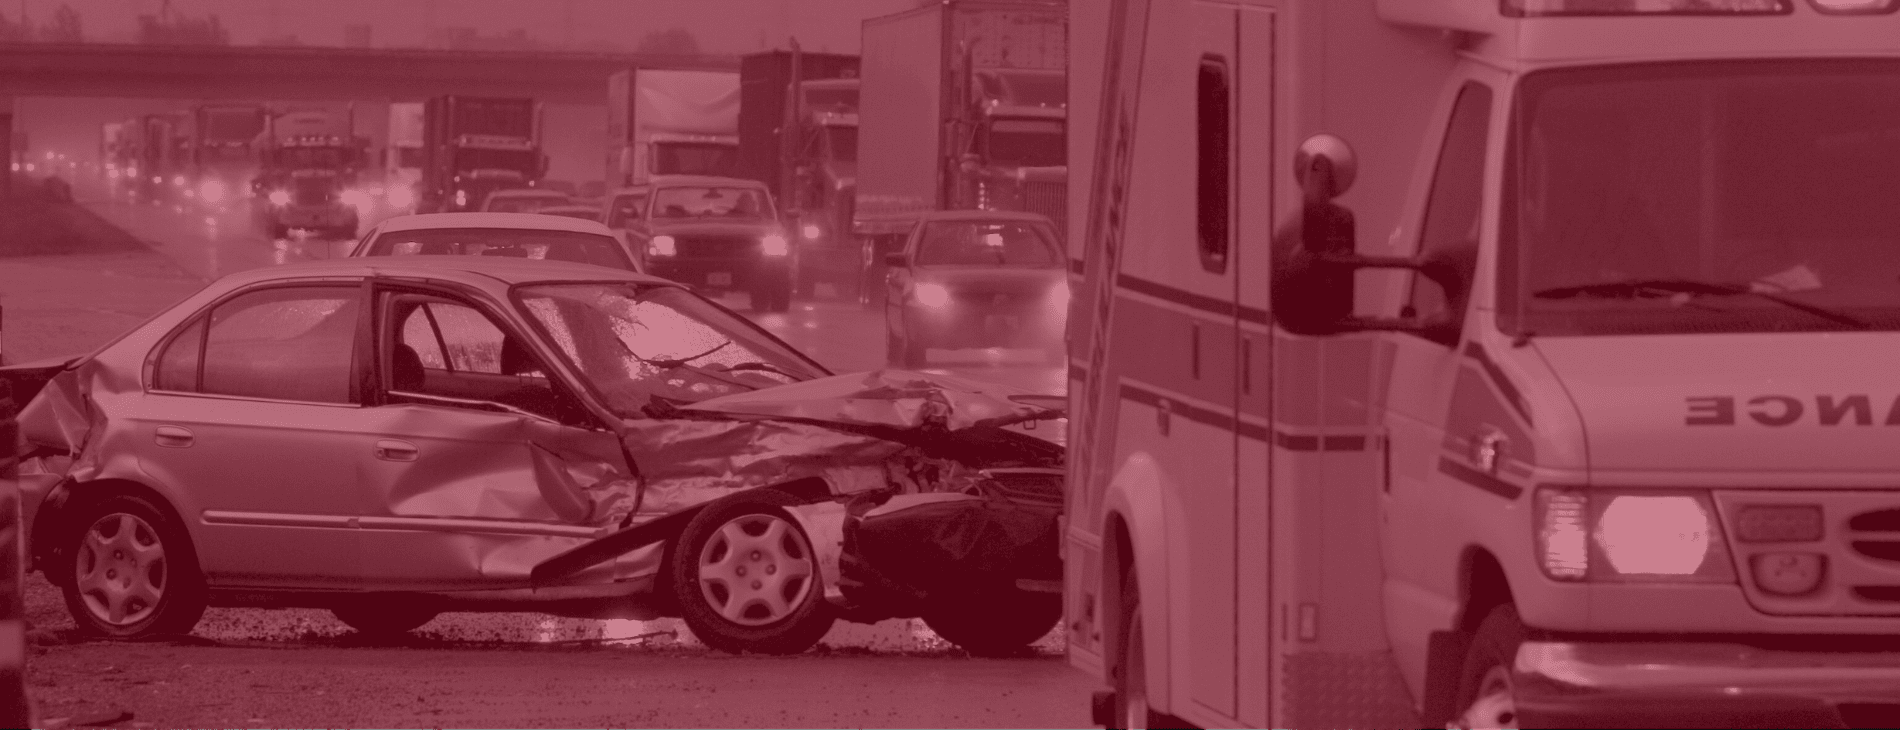 Oakland car crash